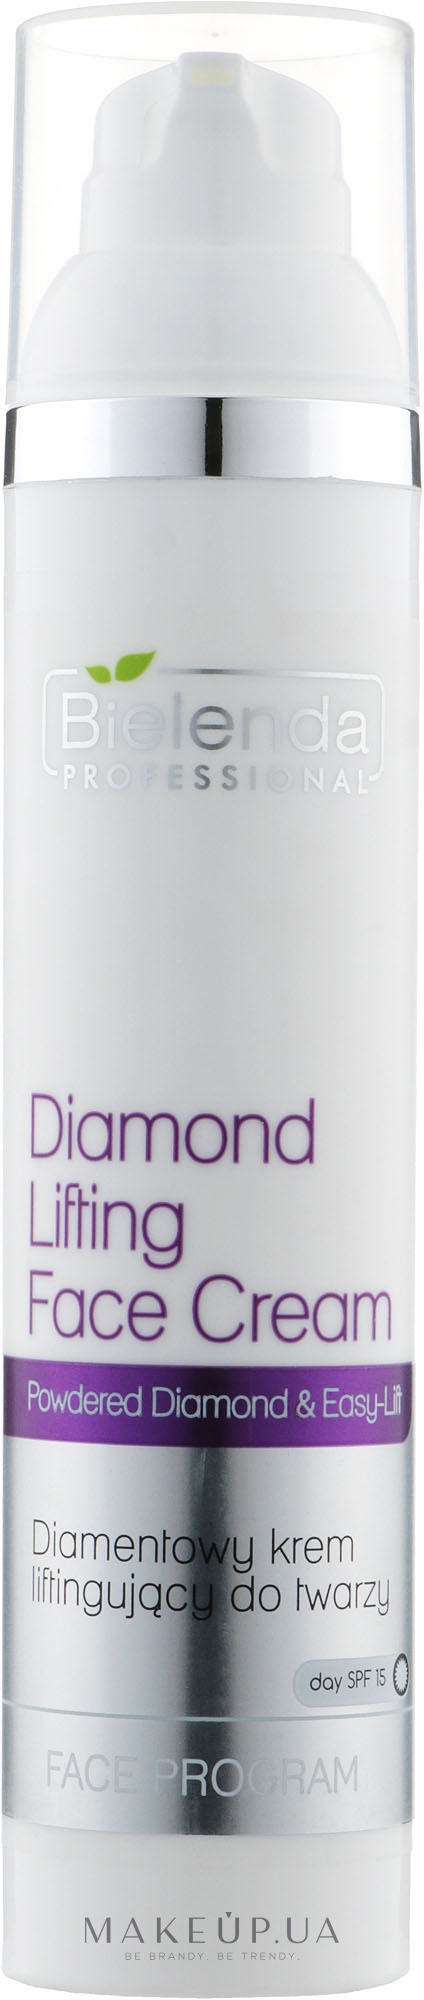 Діамантовий крем з ефектом ліфтингу - Bielenda Professional Face Program Diamond Lifting Face Cream — фото 100ml